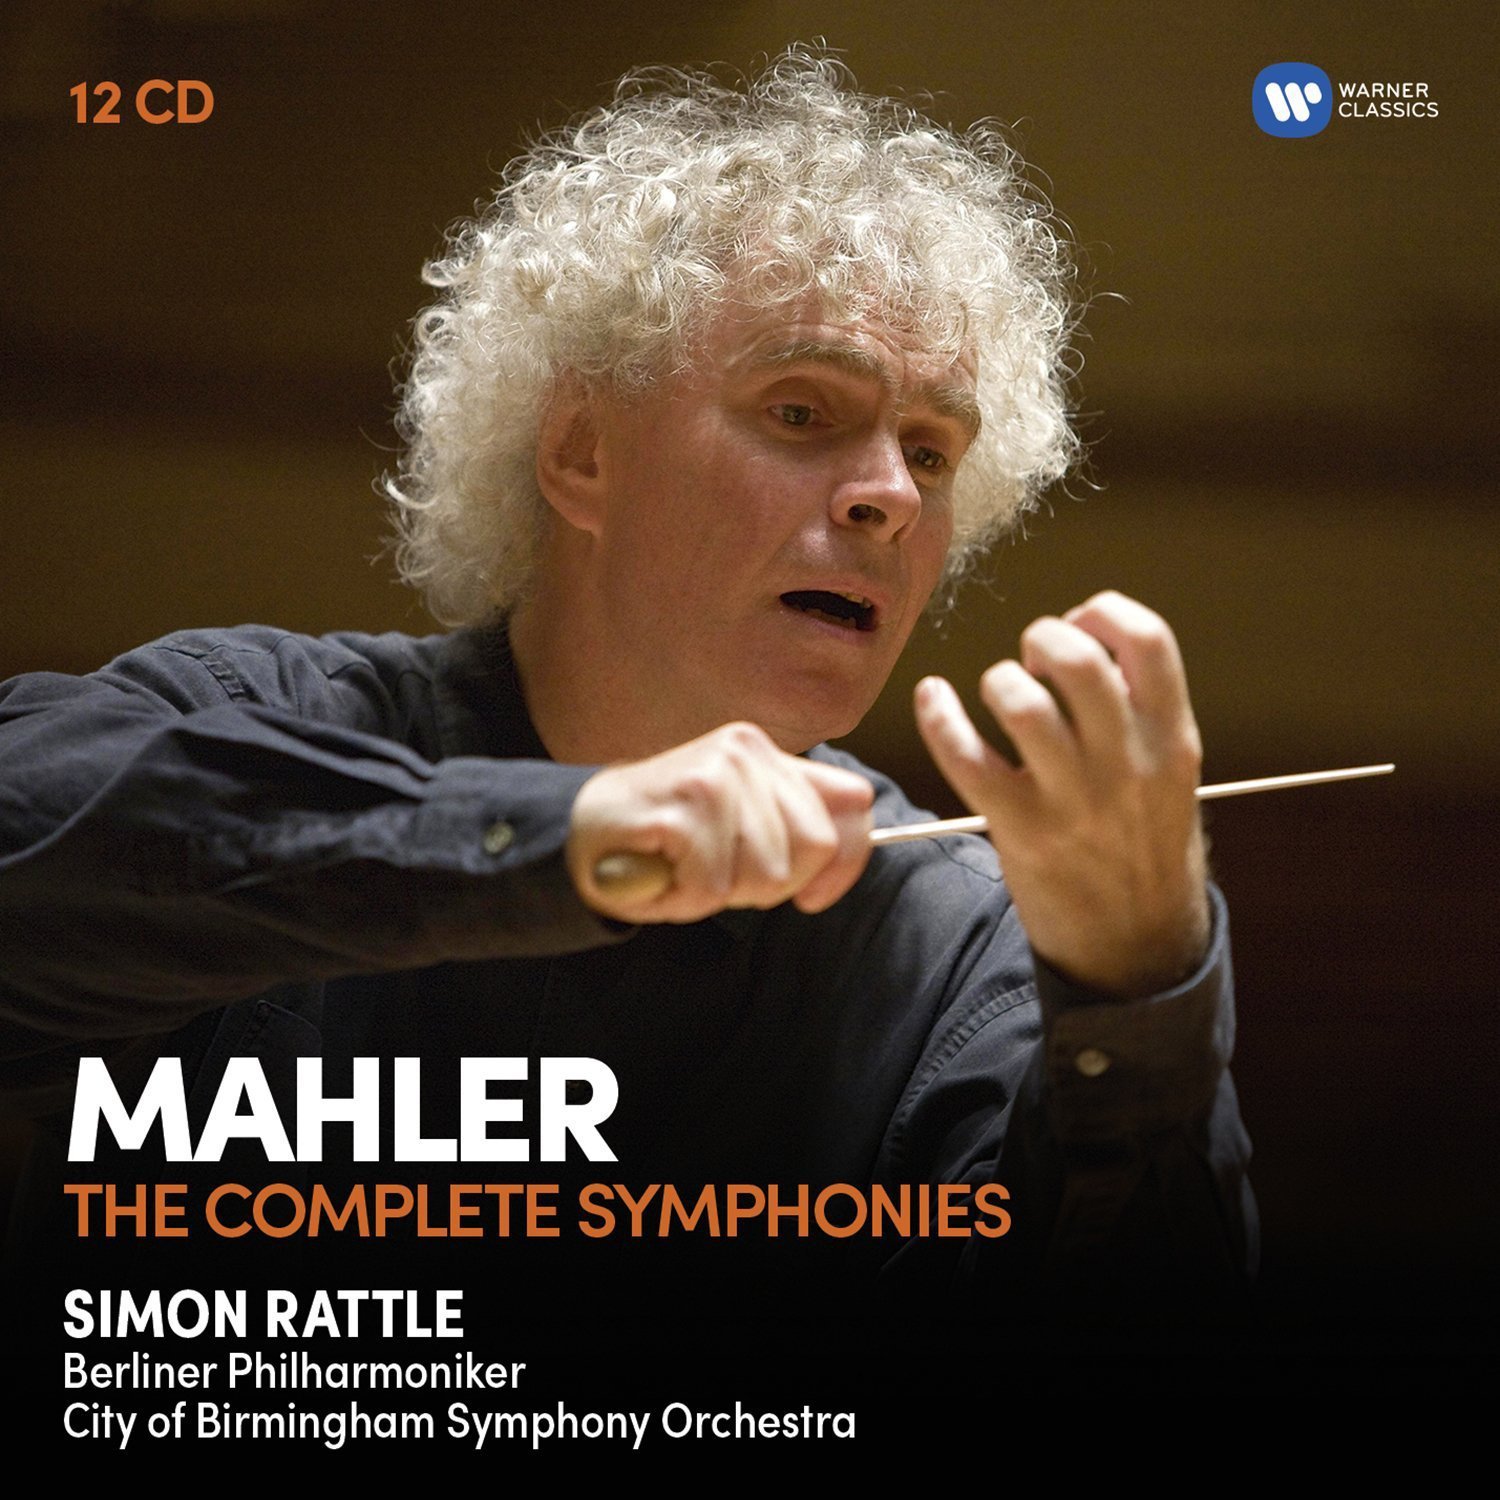 Mahler: The Complete Symphonies - Box set | Simon Rattle image7